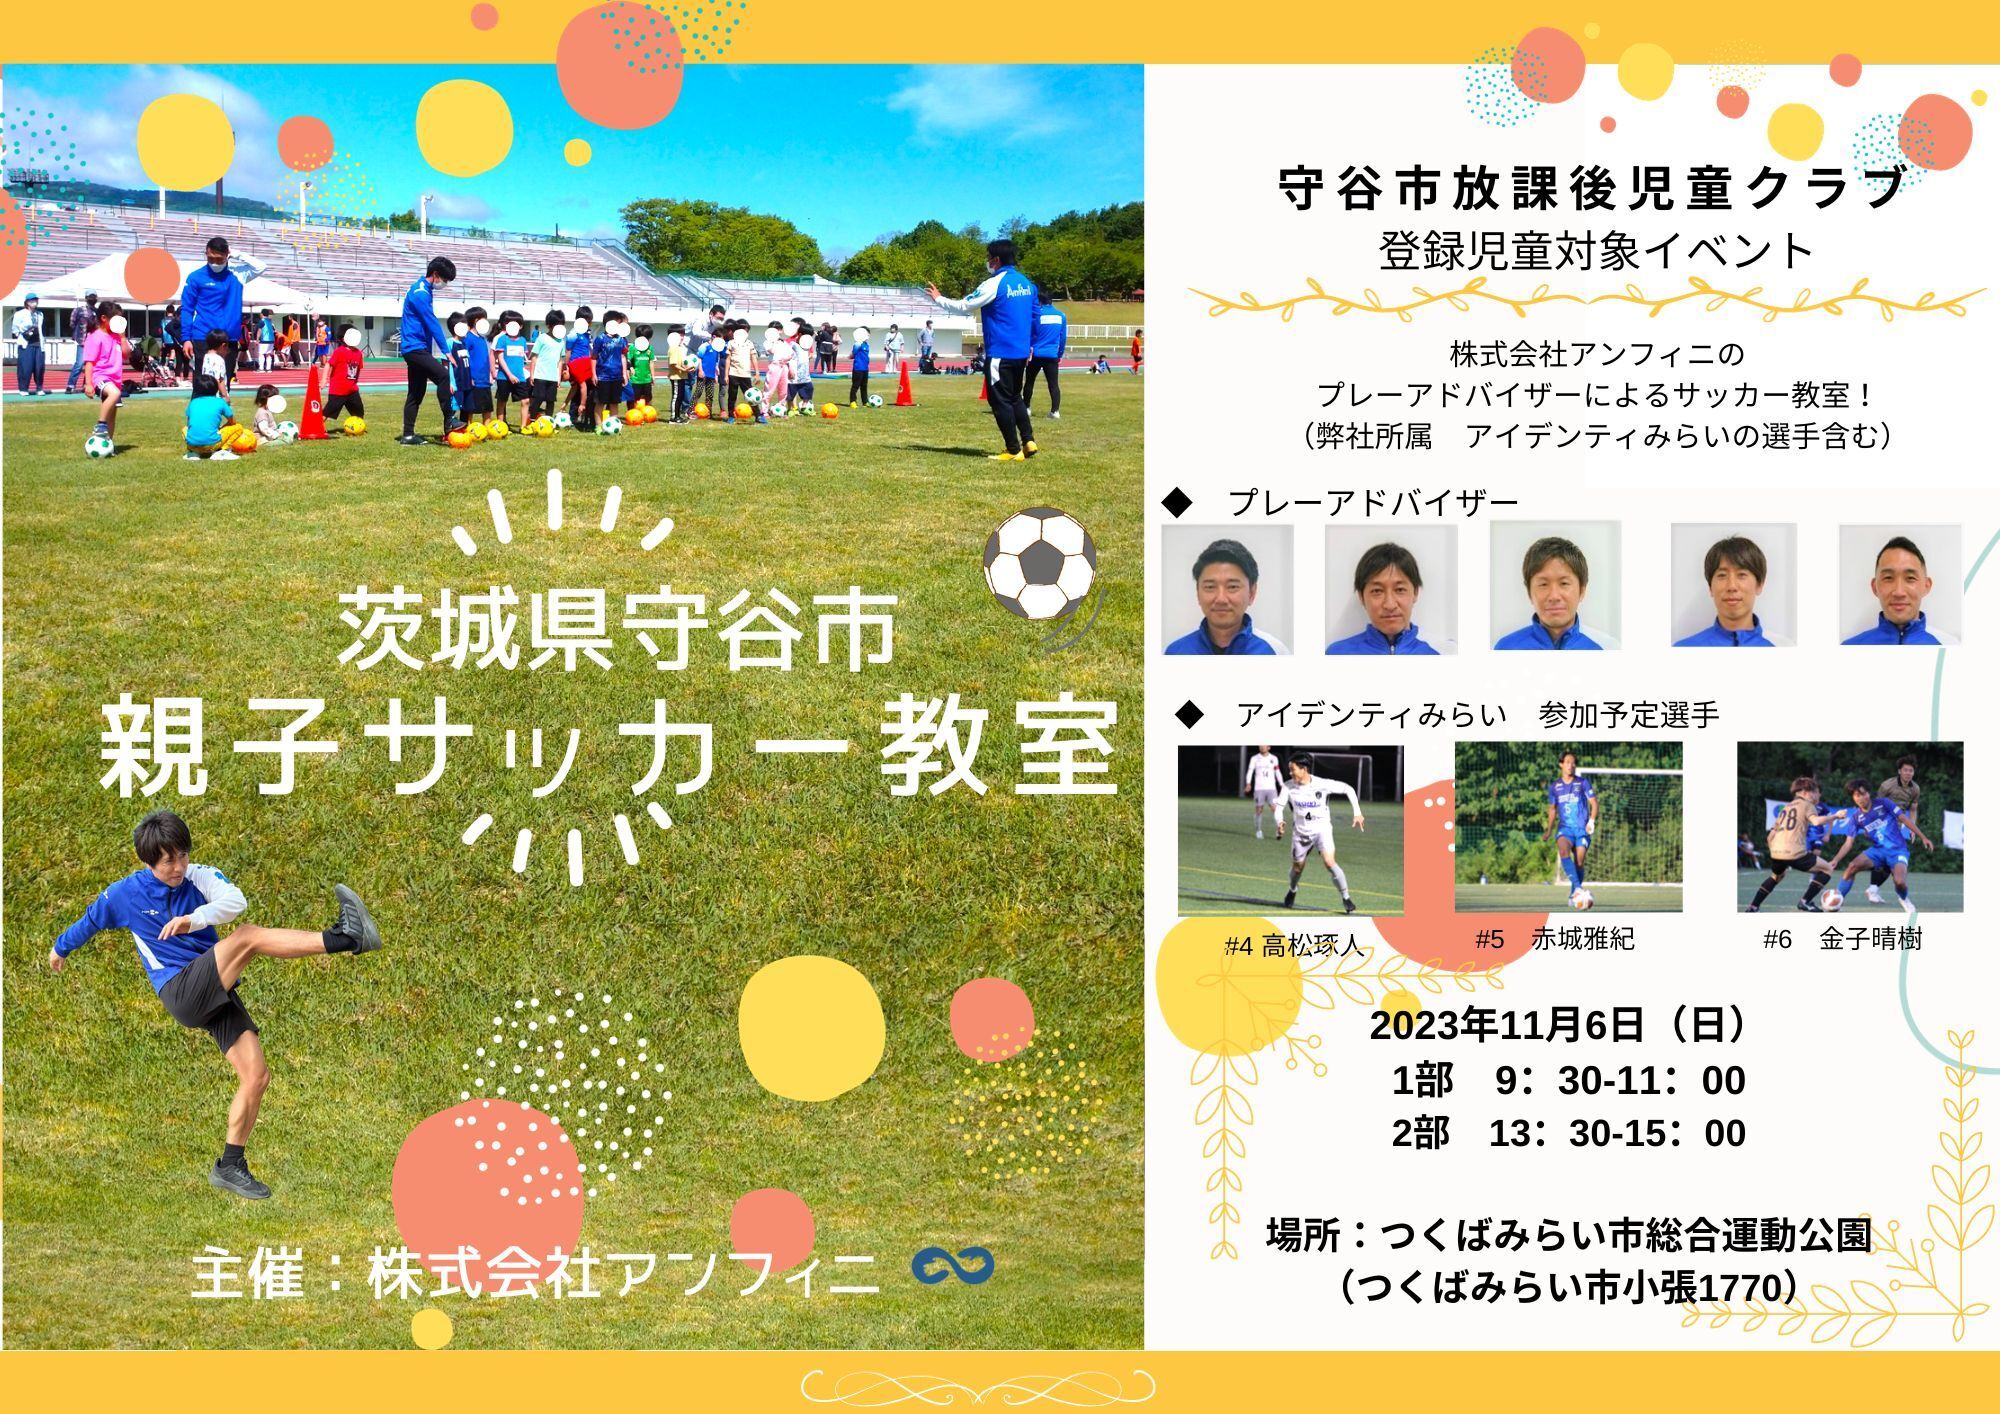 ルヴァンカップを対象とした「ＷＩＮＮＥＲ」決勝「アビスパ福岡 ｖｓ 浦和レッズ」の投票状況をご紹介！